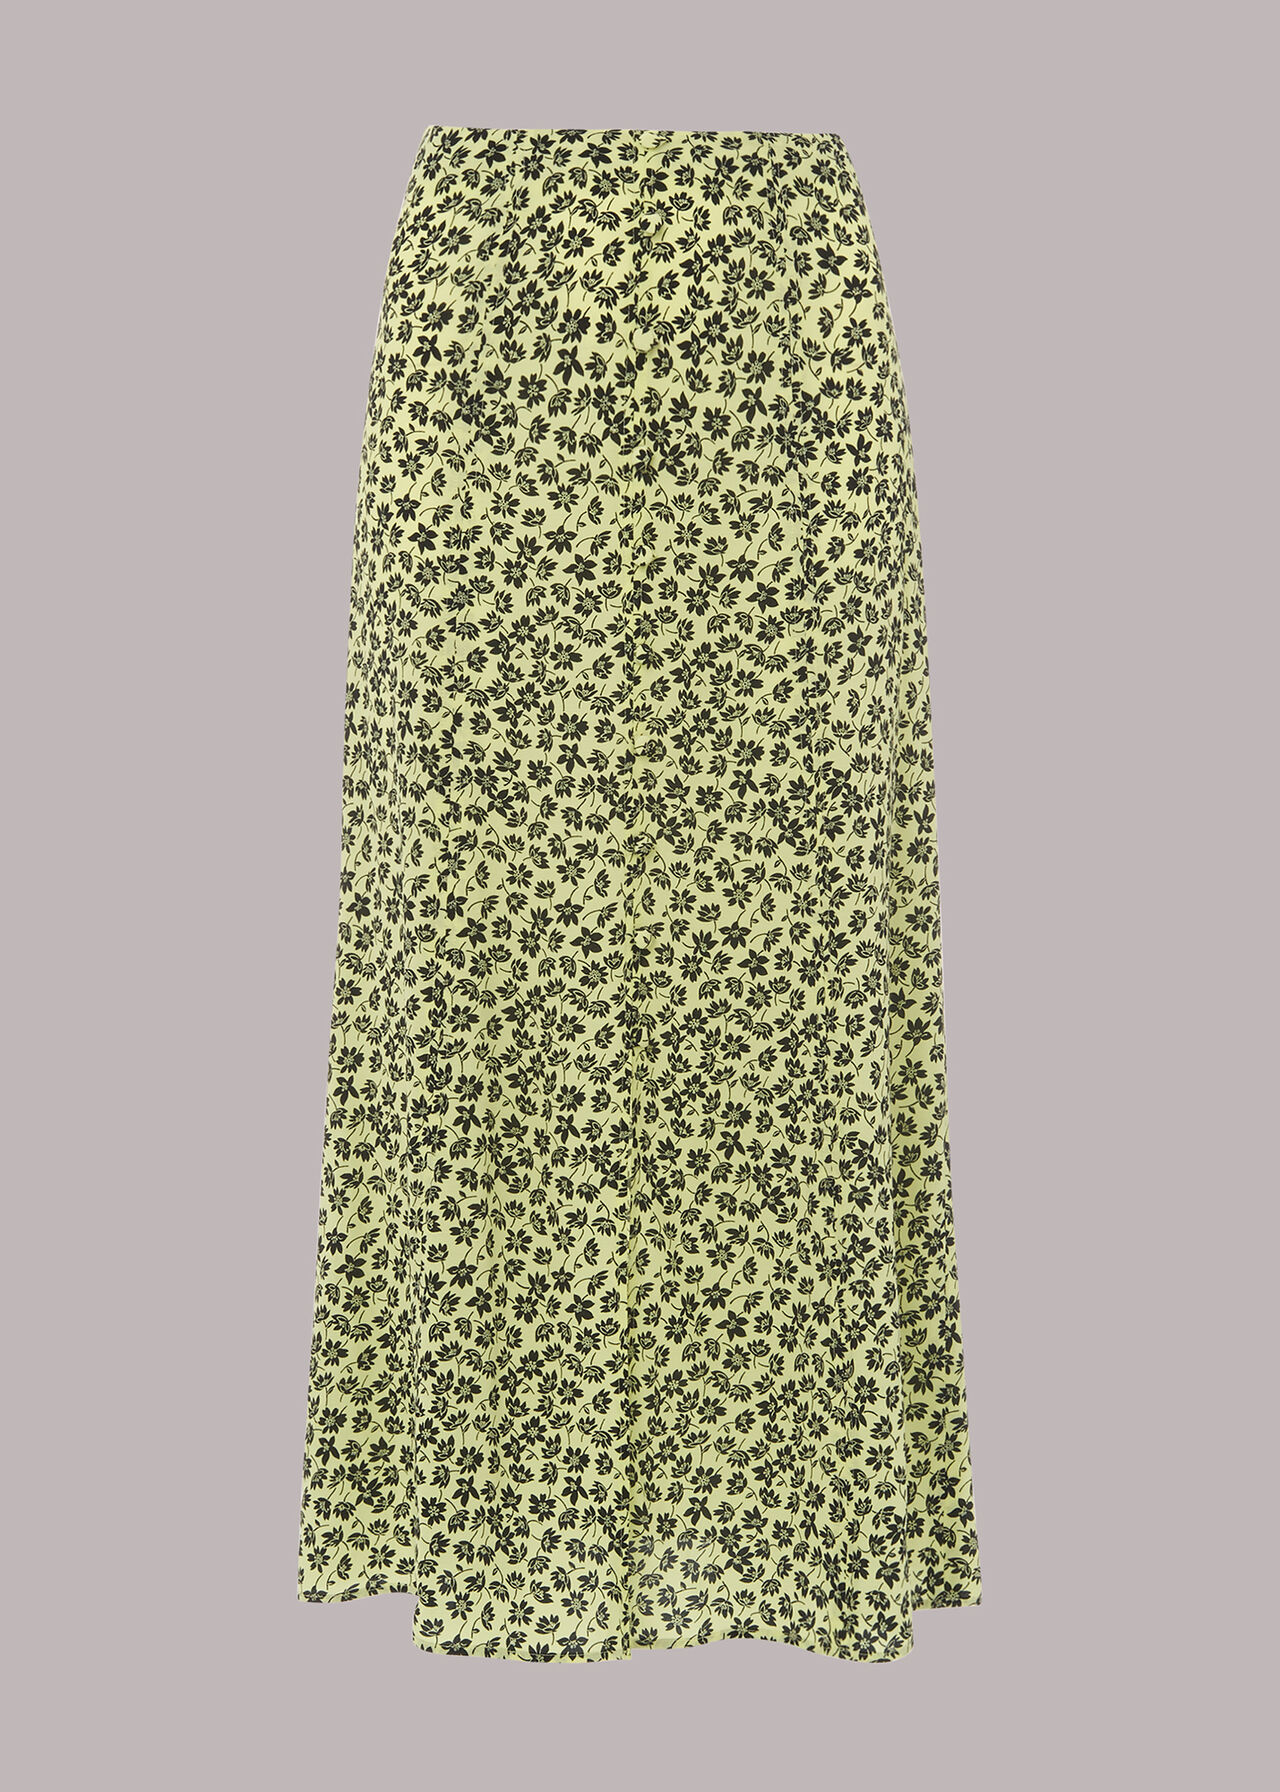 Buttercup Floral Skirt